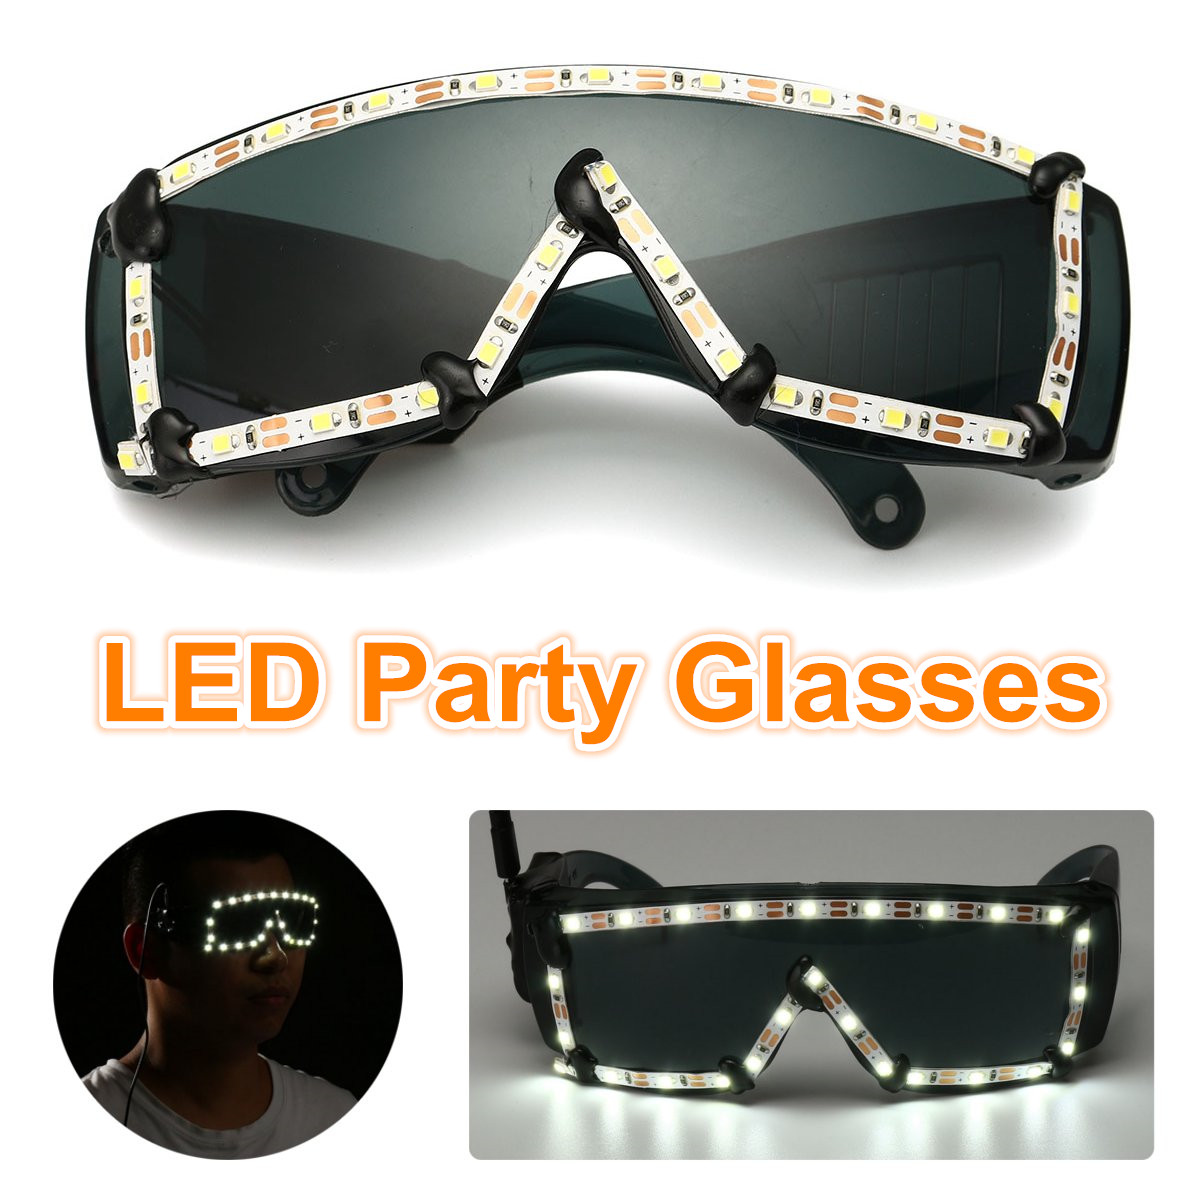 White-LED-Glasses-Light-Up-Glow-Sunglasses-Eyewear-Shades-Nightclub-Party-Decor-1525653-1